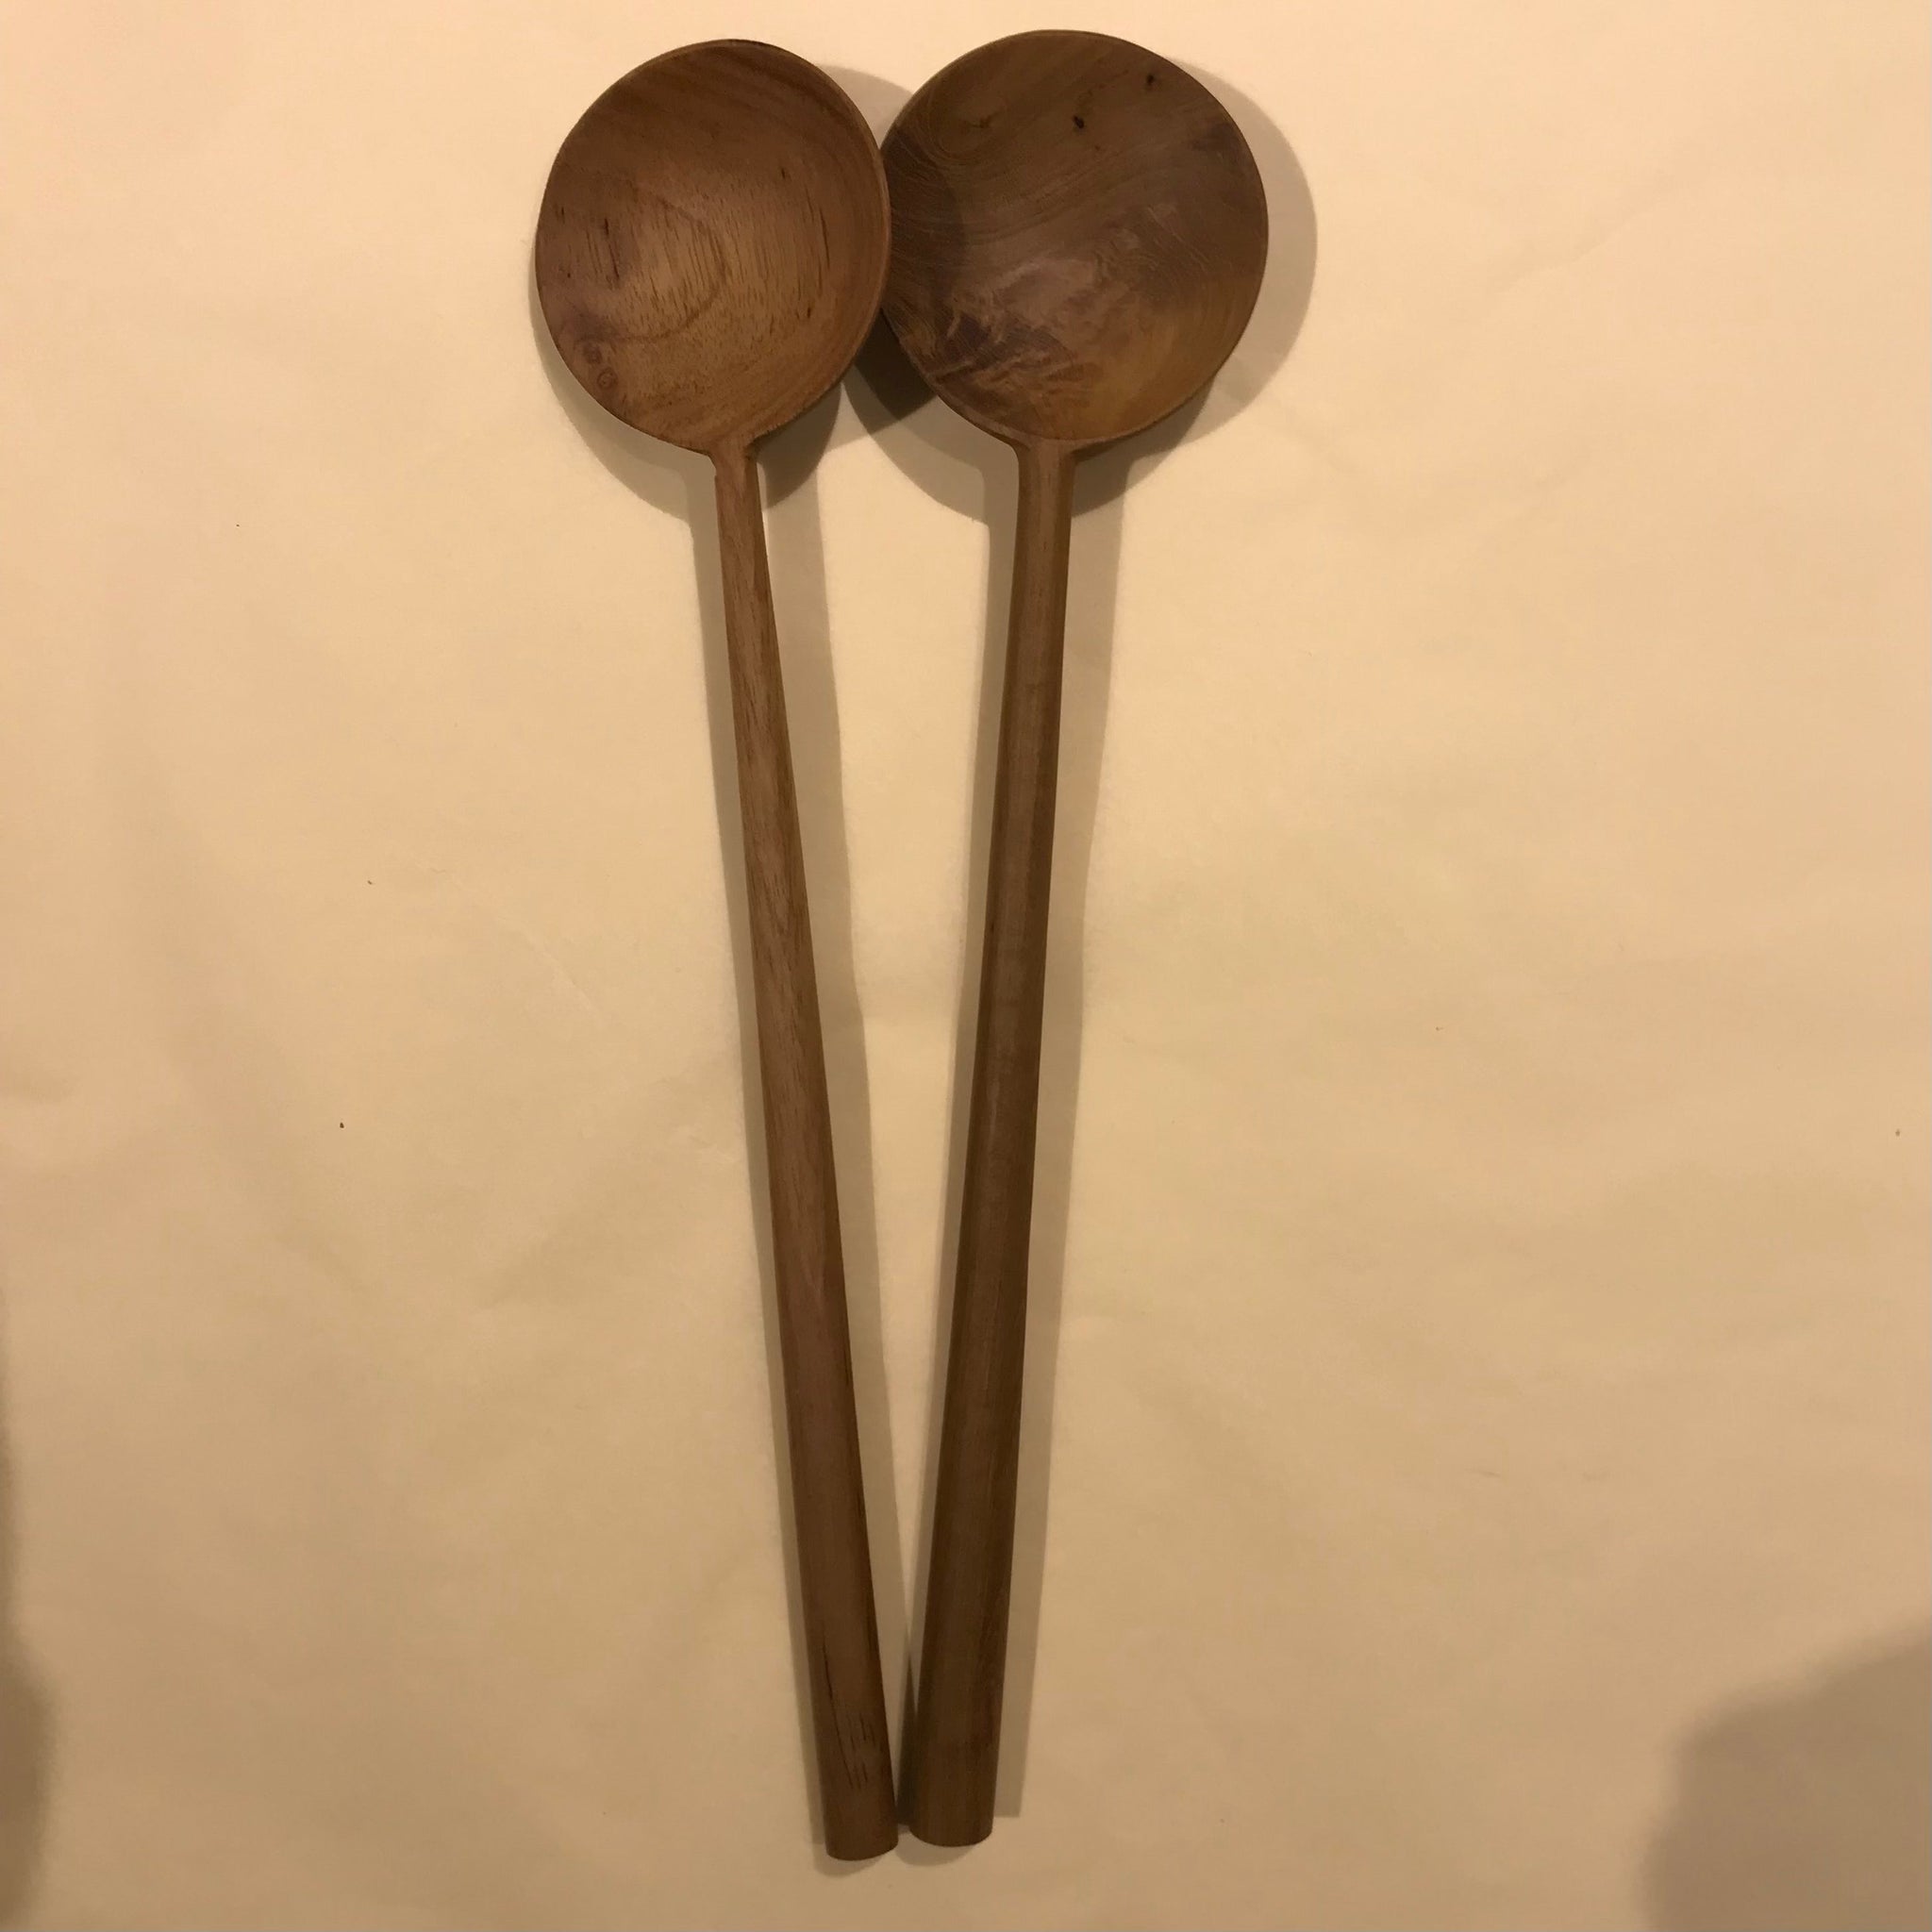 Bali Harvest Teak Wood Spoon Set of 2